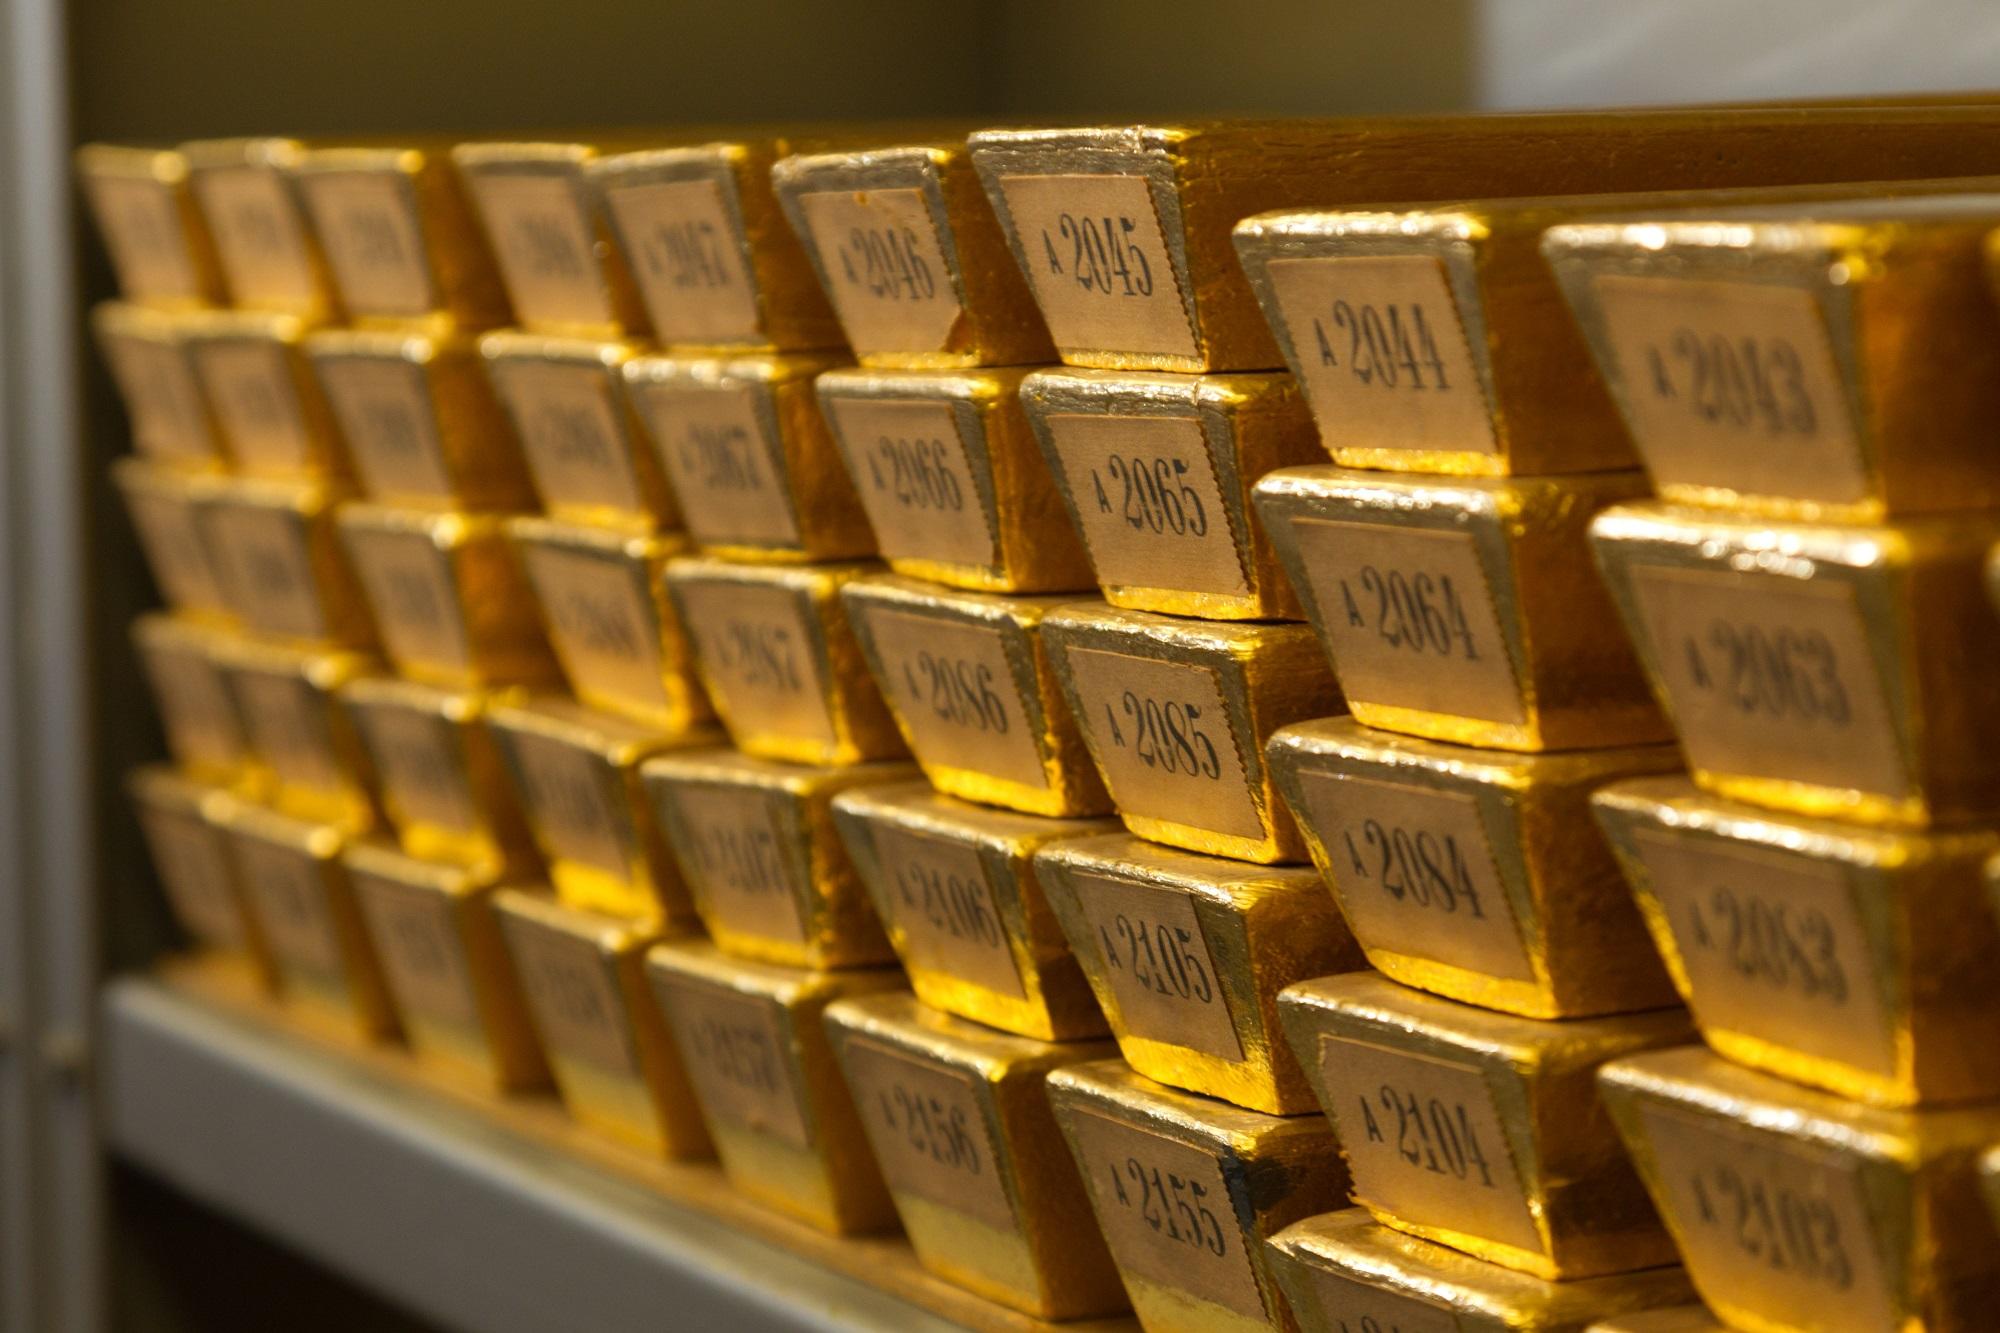 سبائك ذهب في البنك المركزي الألماني. ألمانيا الدولة الوحيدة التي أعلن بنكها المركزي عن انخفاض في حجم احتياطات الذهب، بأكثر من طن في شهر نيسان/ابريل الماضي، بسبب برنامج سك العملة القديم. (ا ف ب)